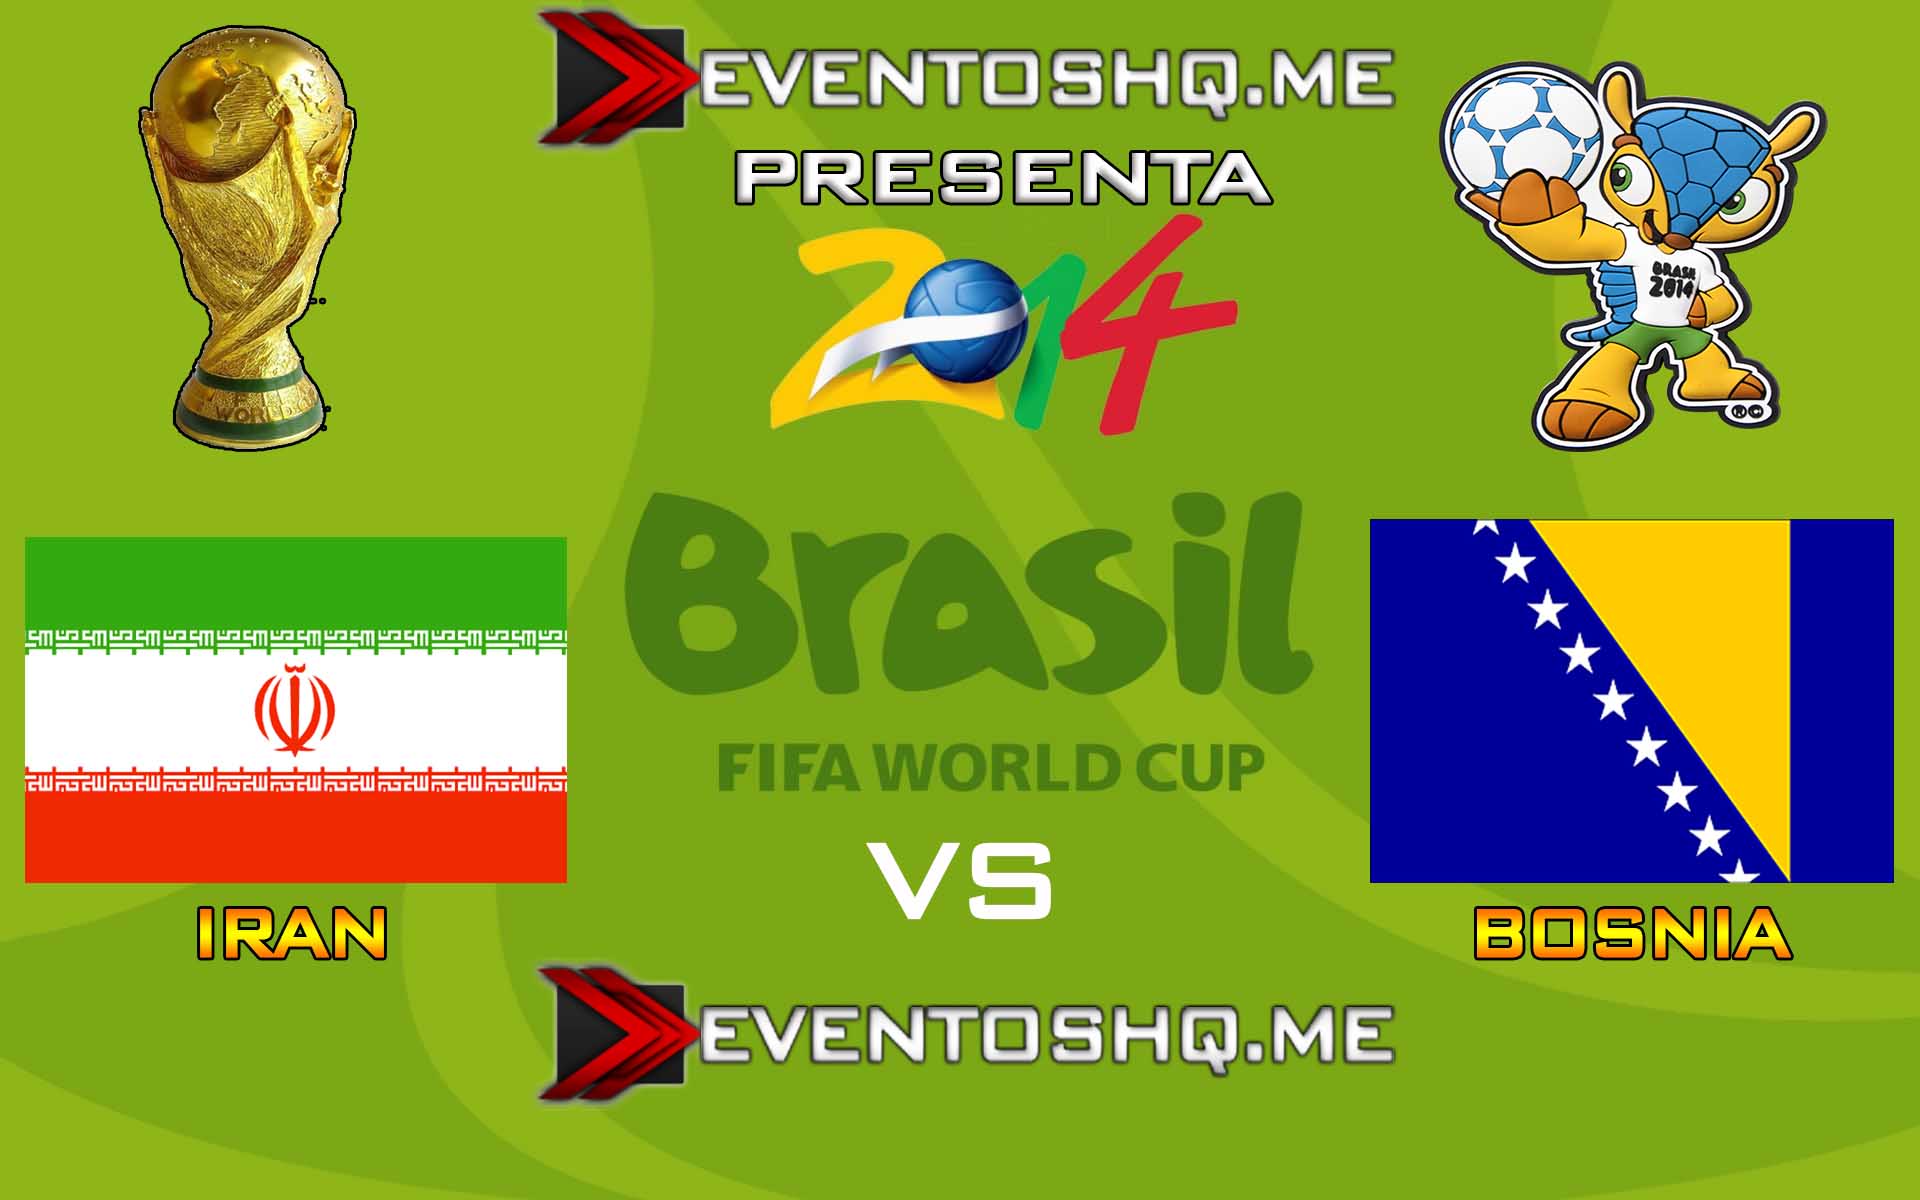 Ver en Vivo Iran vs Bosnia Mundial Brasil 2014 www.eventoshq.me